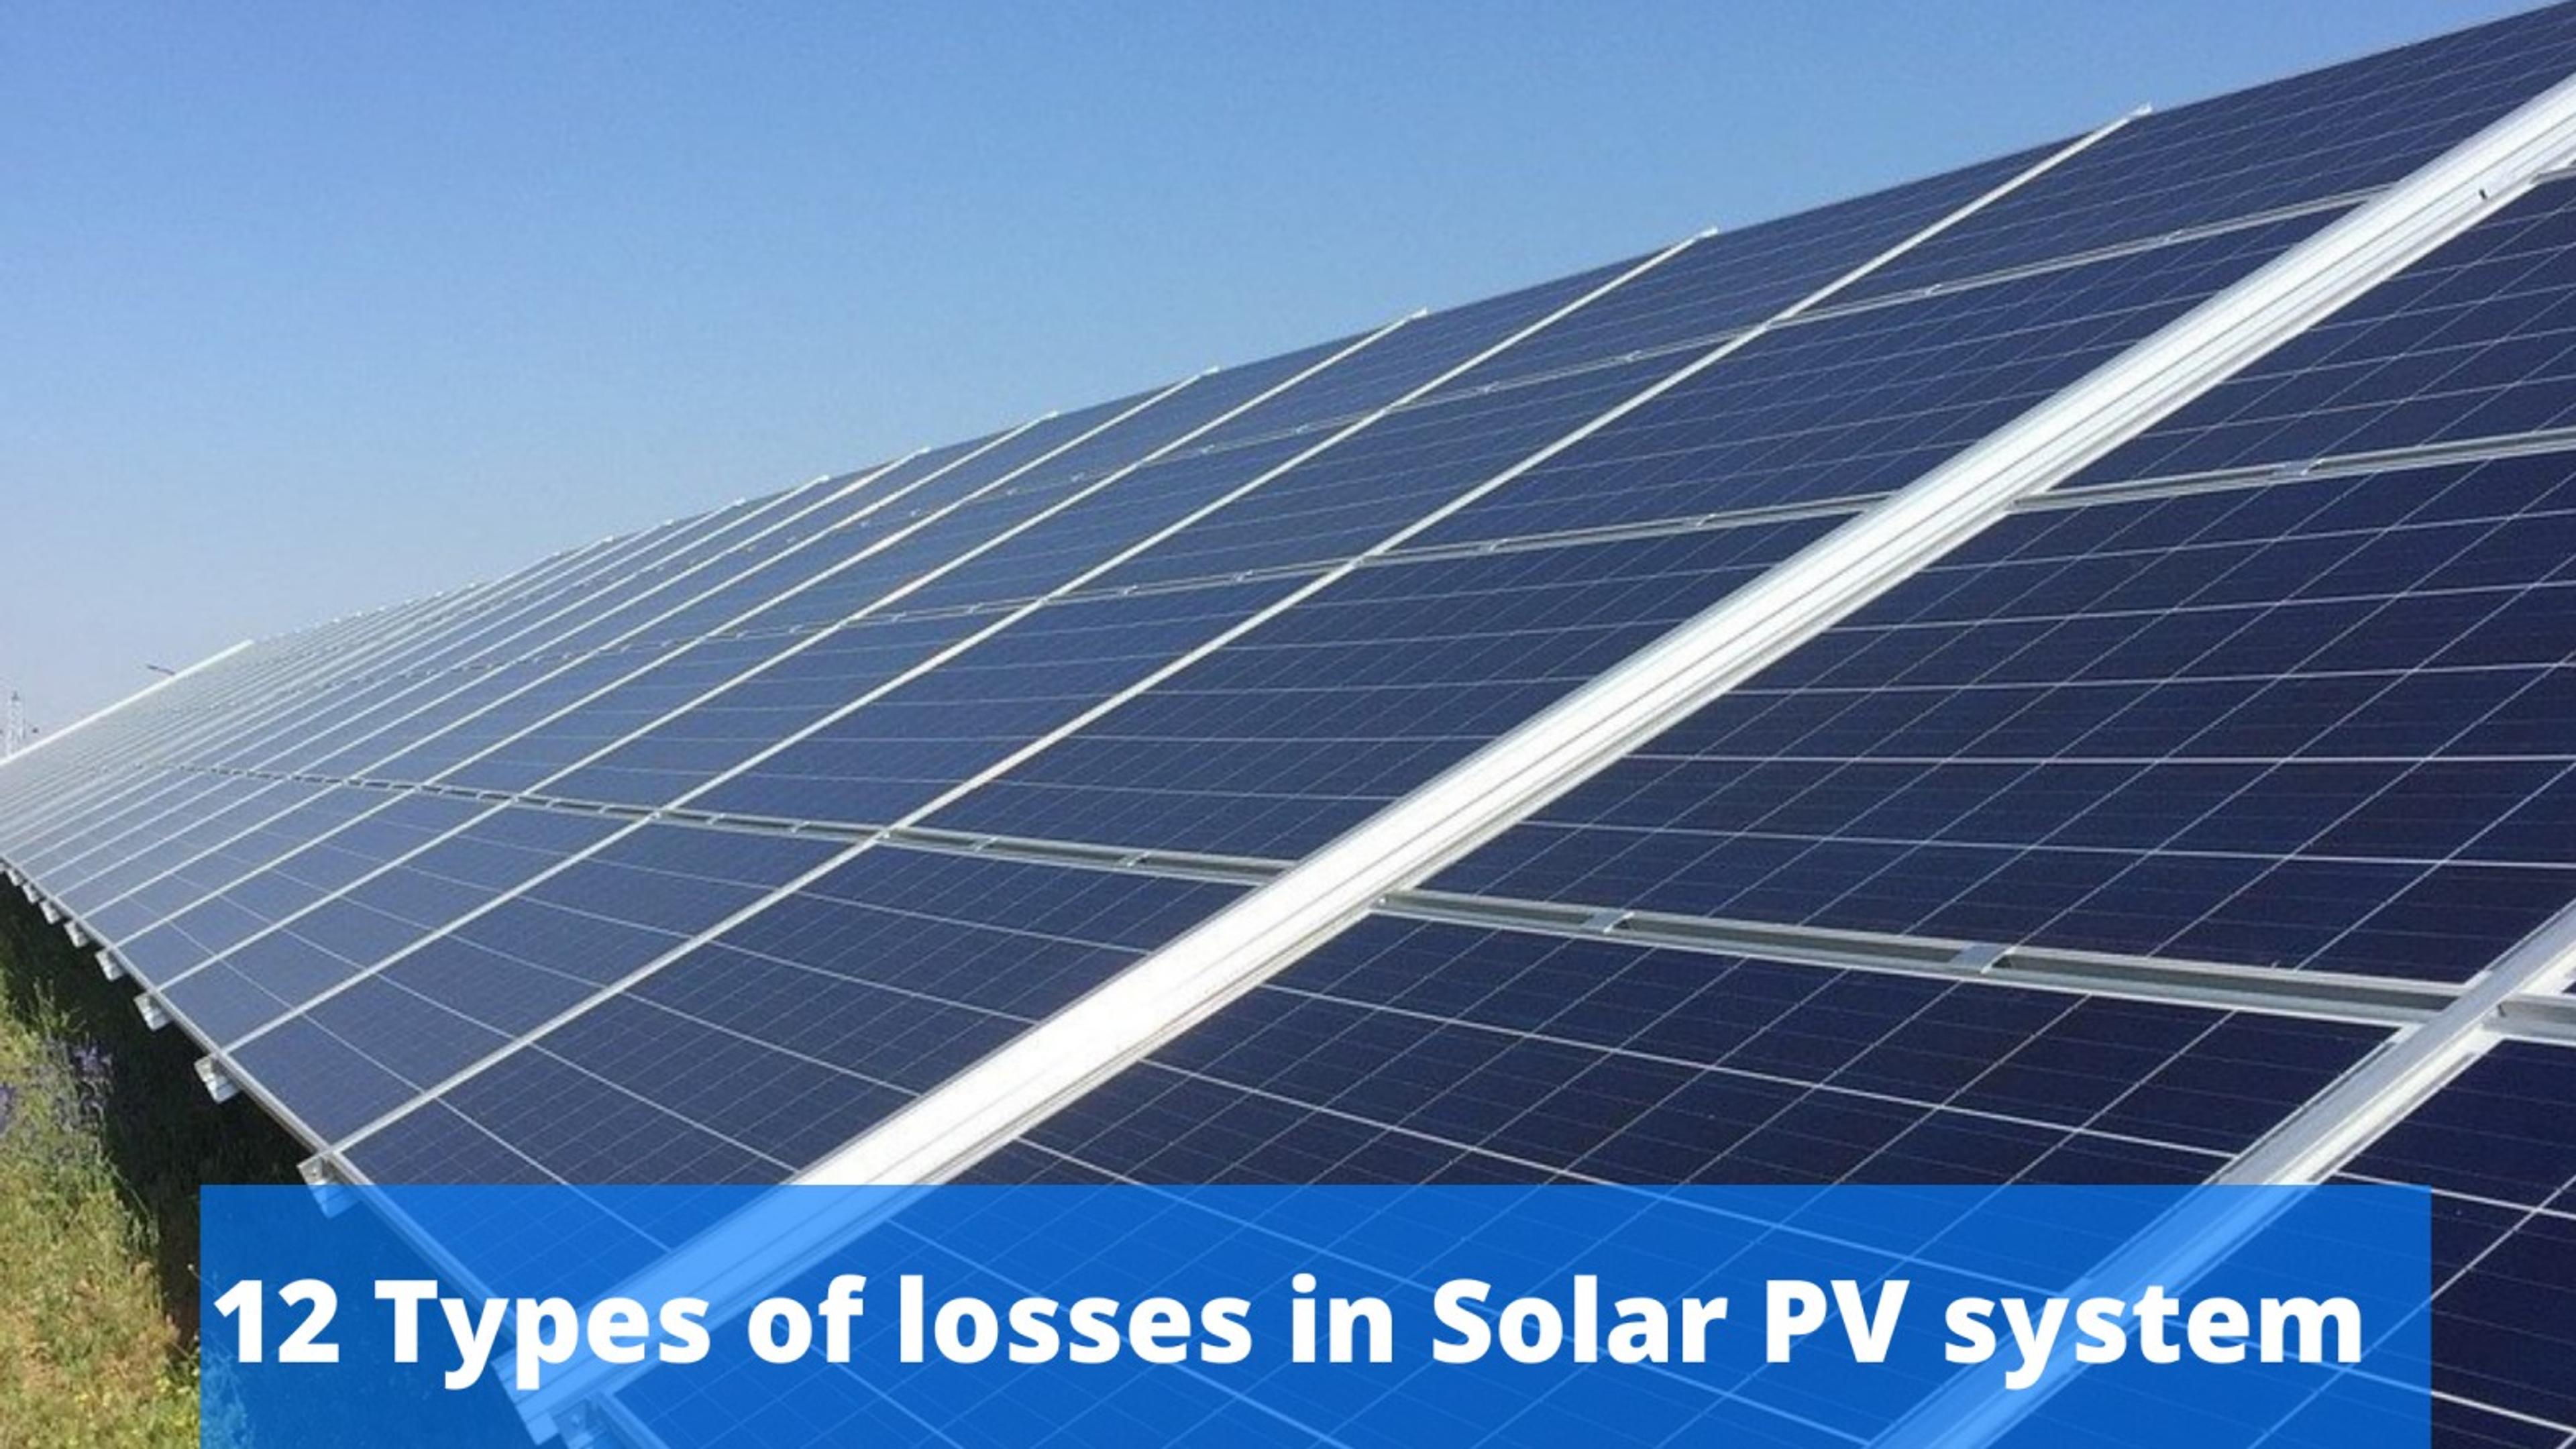 Losses in Solar PV System